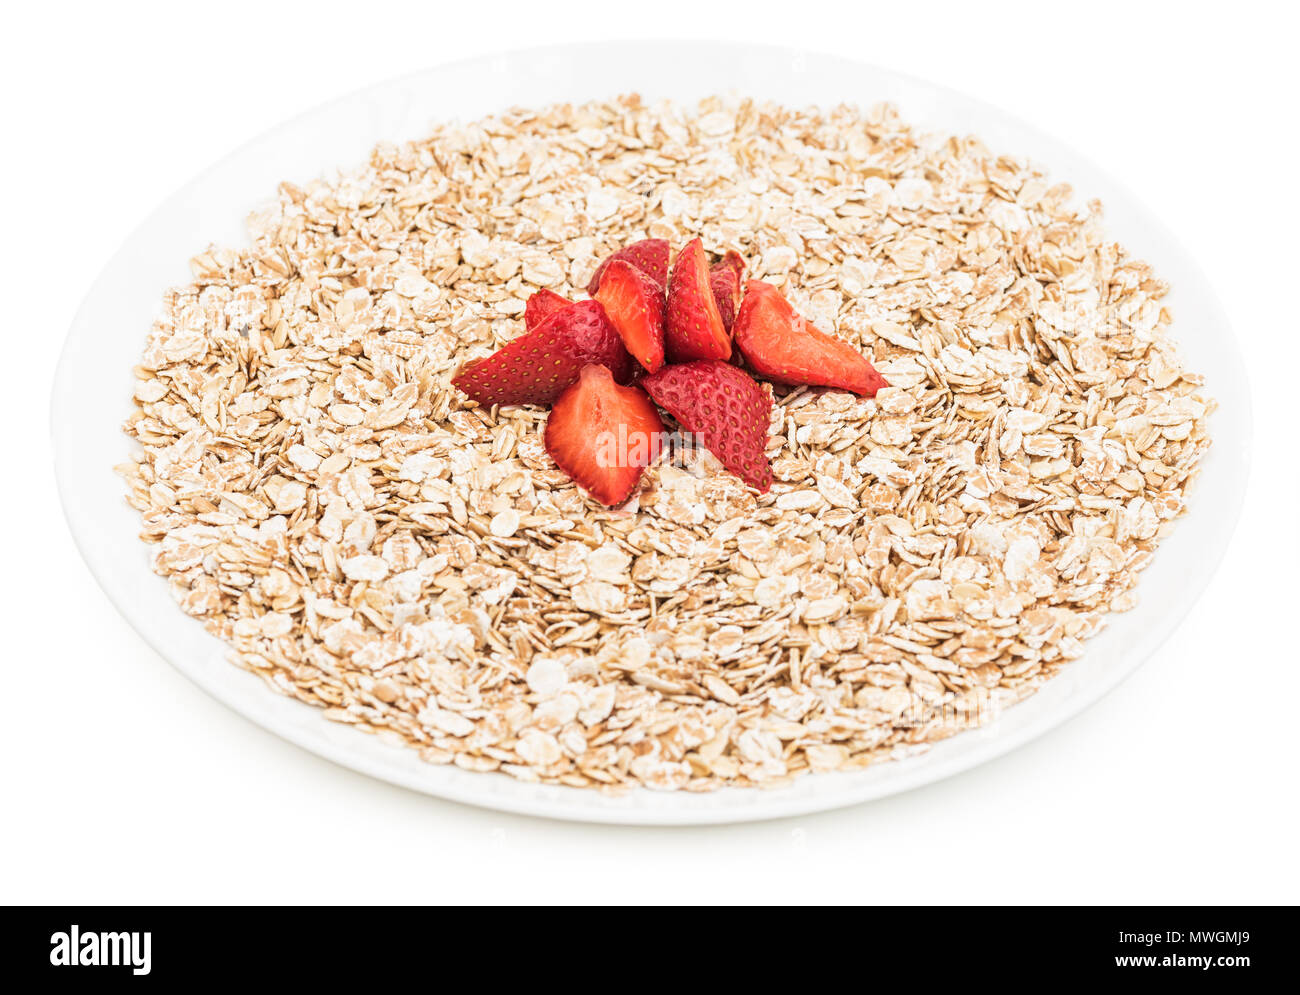 Trockene Haferflocken mit gehackten Erdbeere in eine weiße Platte auf einem weißen Hintergrund. Leckeren, gesunden Frühstück. Stockfoto